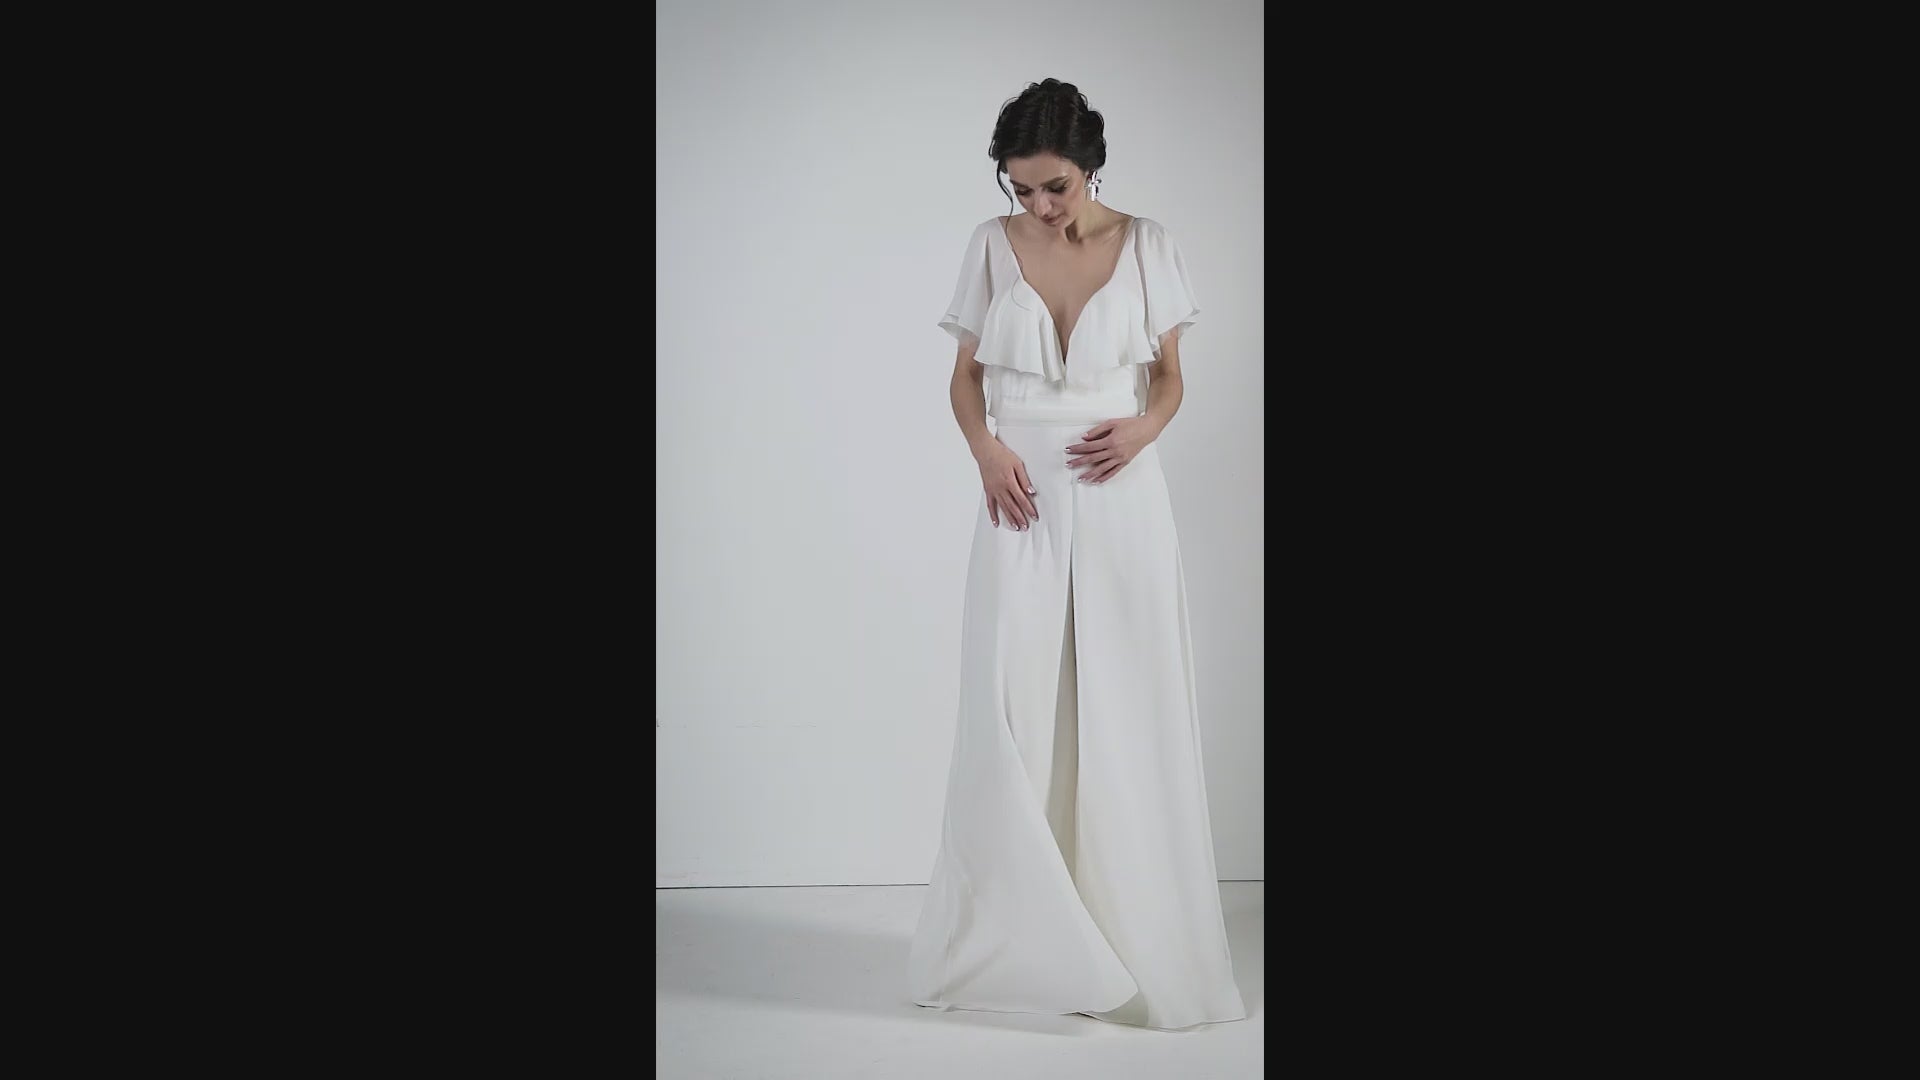 Olabisi Pants Illusion White Wedding dress video